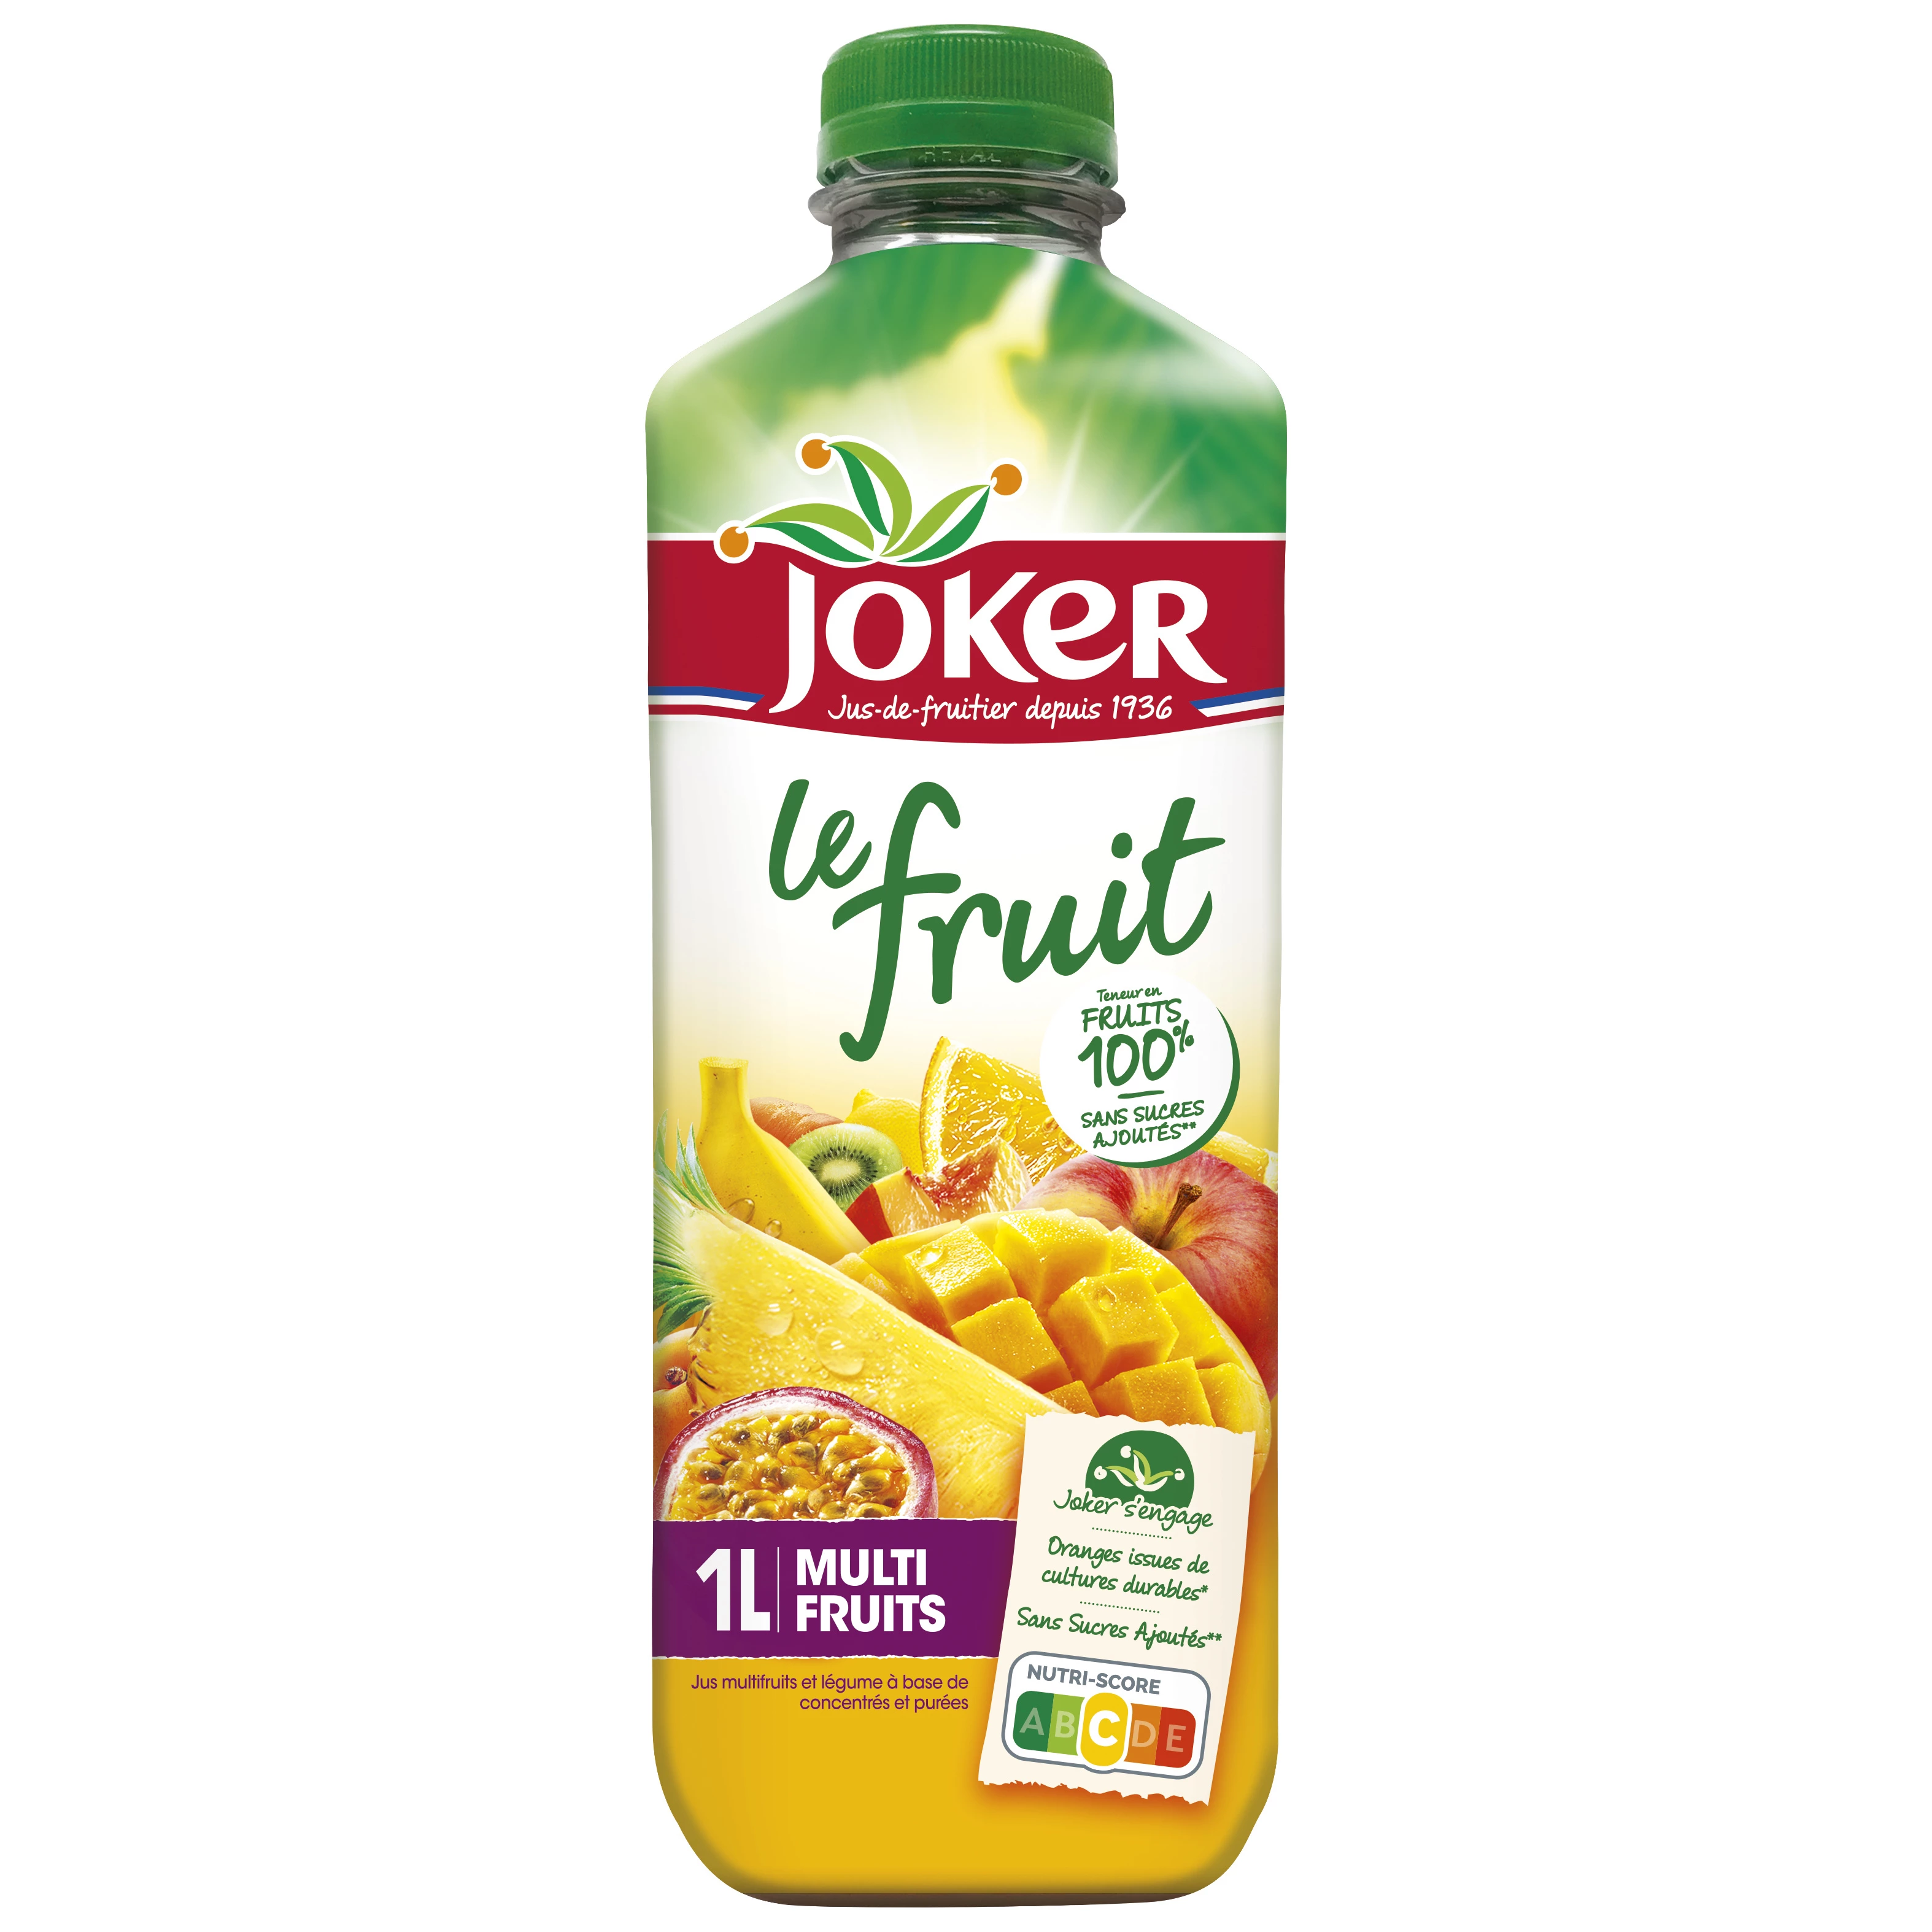 Joker Le Fruit Abc Multifr. Educaçao Fisica